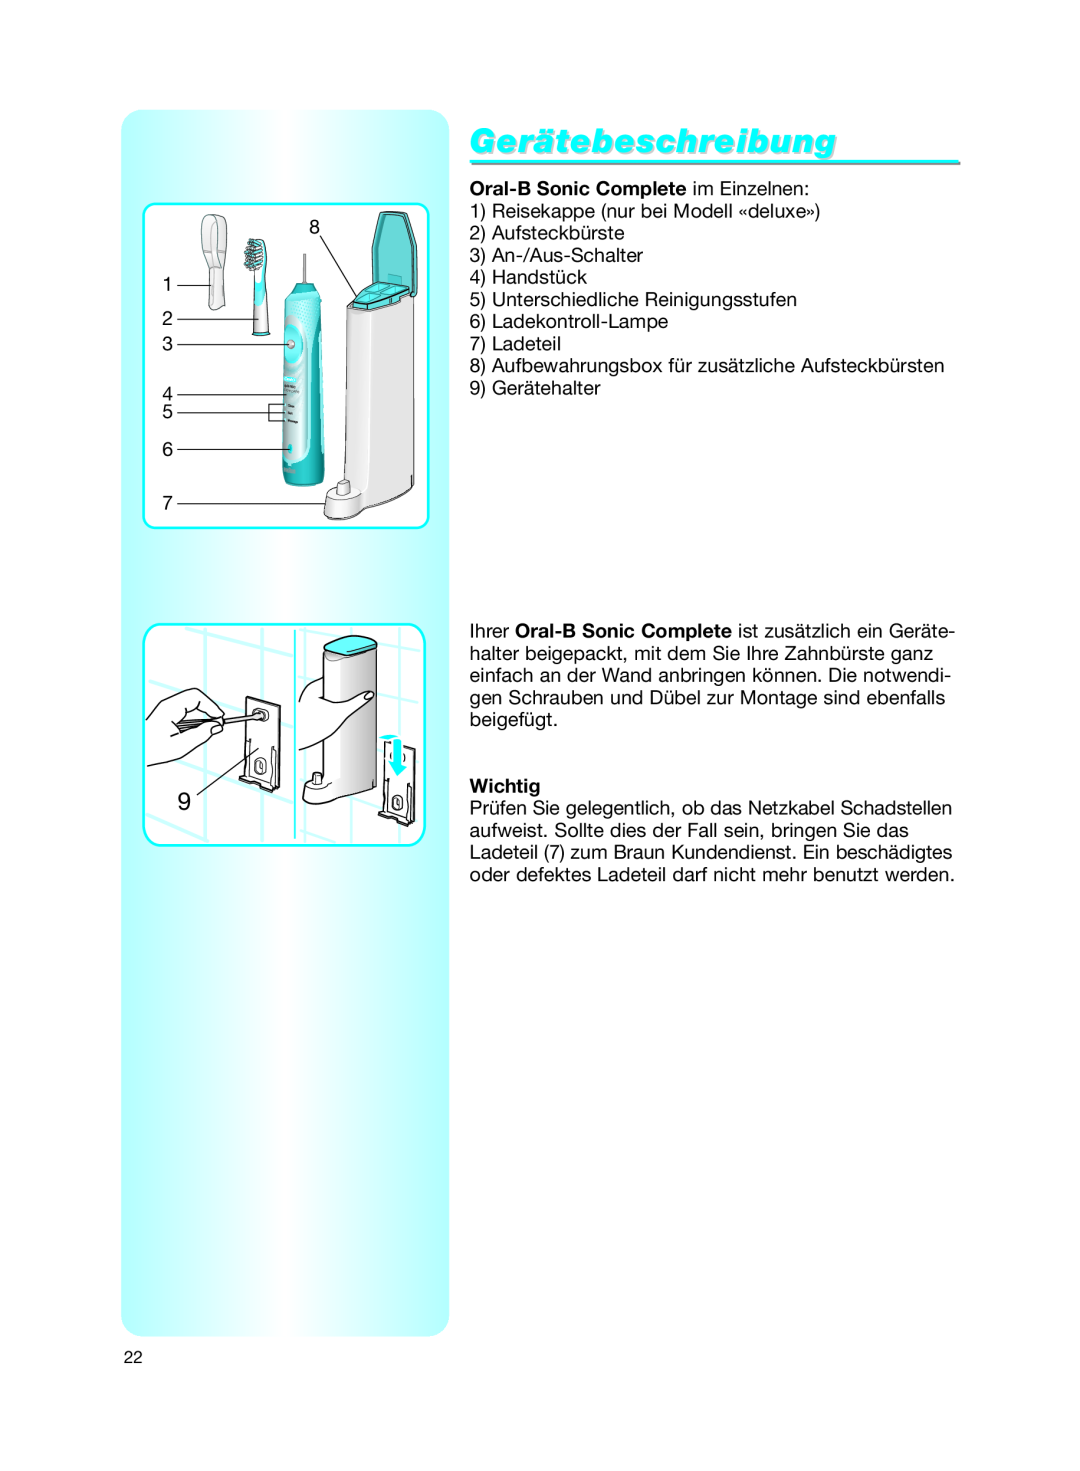 Braun manual Gerätebeschreibung, Oral-B Sonic Complete im Einzelnen, Wichtig 